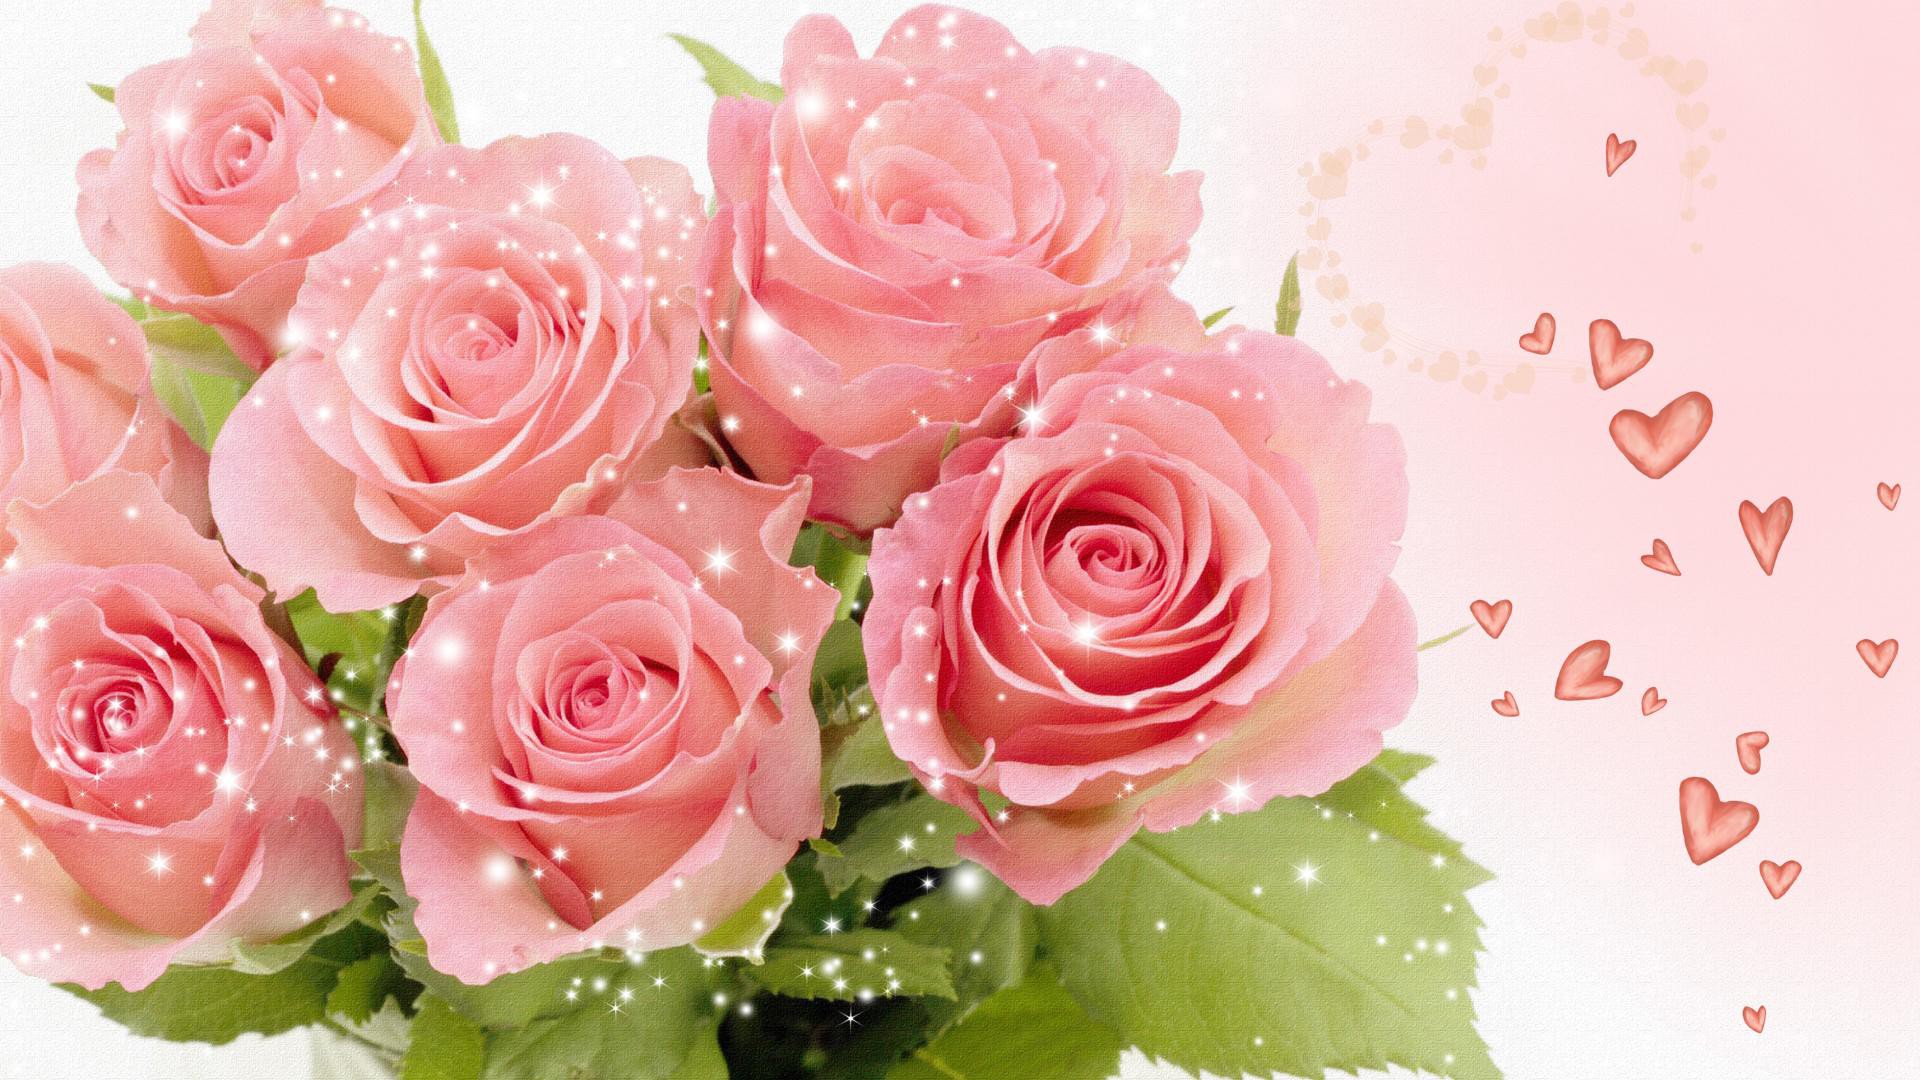 Скачать обои бесплатно Роза, Сердце, Блестки, Художественные, Розовая Роза картинка на рабочий стол ПК